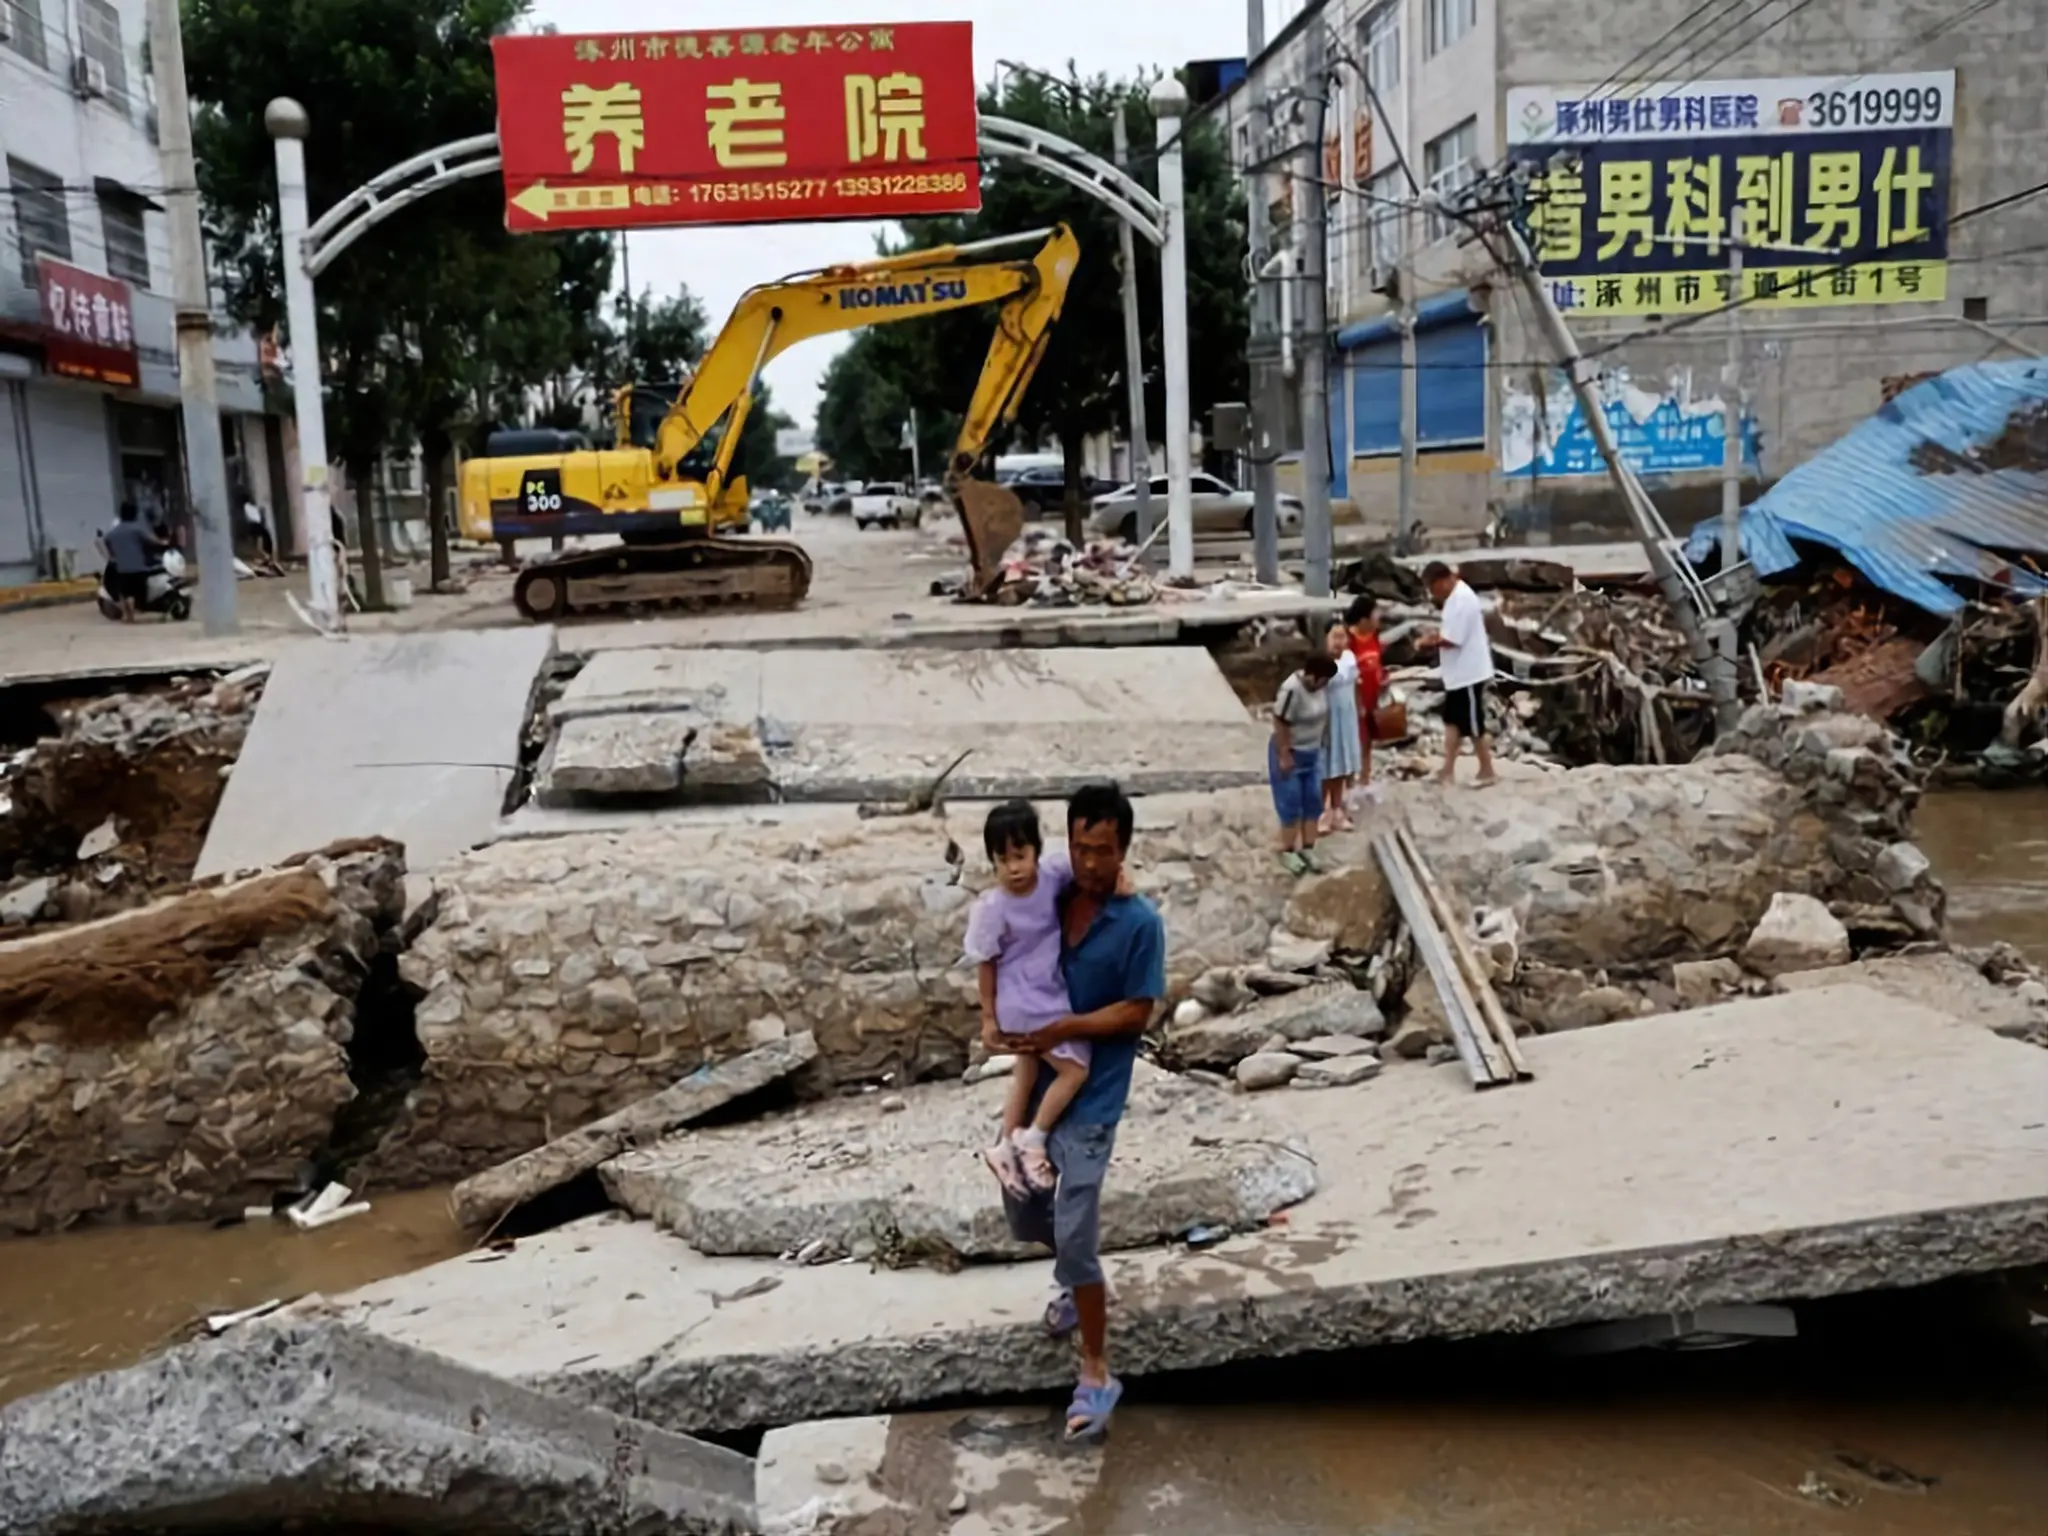 إنزلاق أرضي في جنوب غرب الصين يتسبب في وفاة 47 شخص